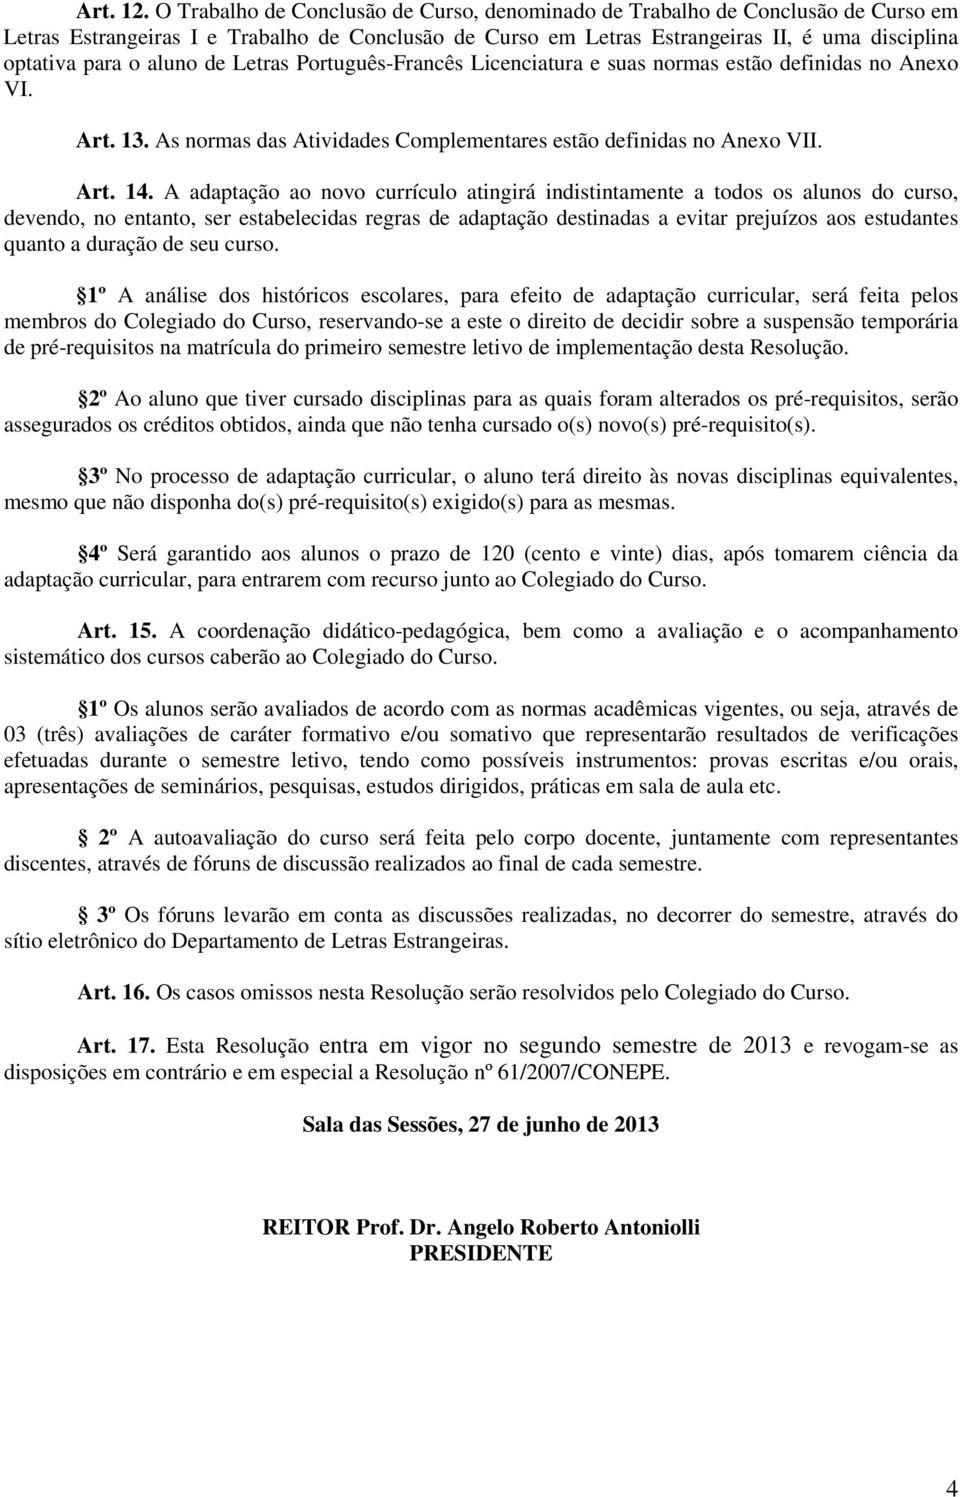 aluno de Letras Português-Francês Licenciatura e suas normas estão definidas no Anexo VI. Art. 13. As normas das Atividades Complementares estão definidas no Anexo VII. Art. 14.